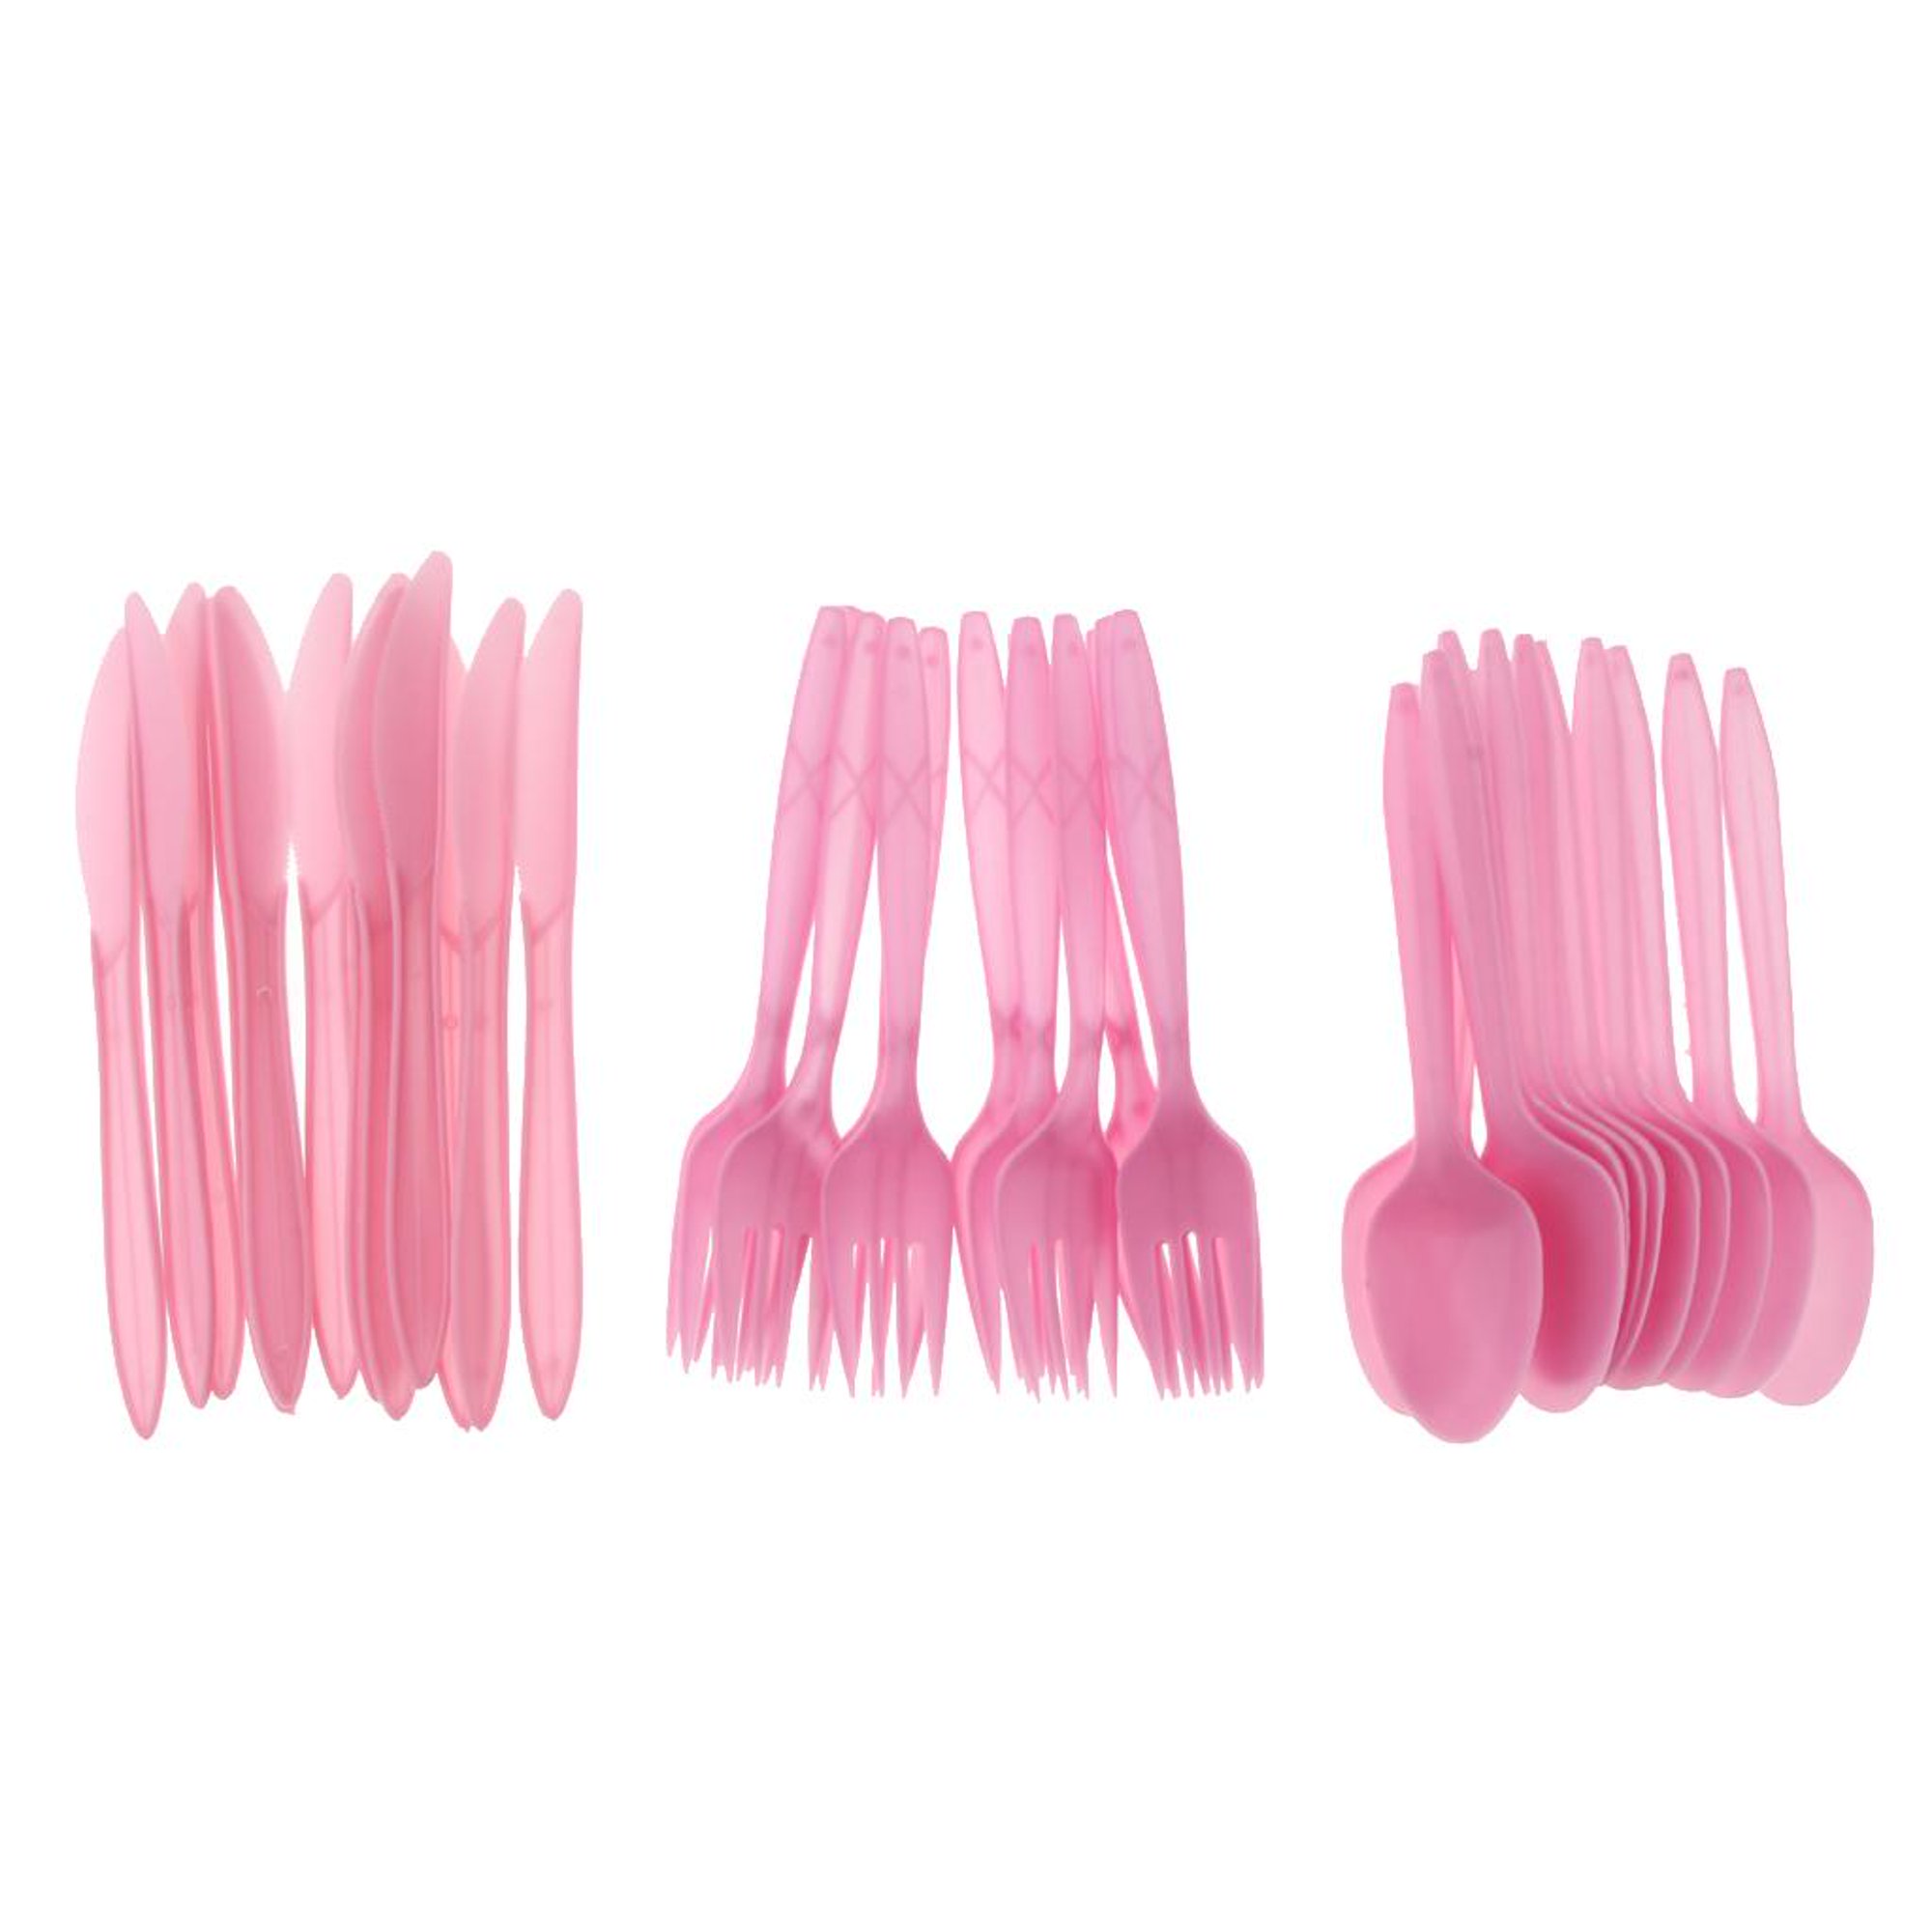 Tenedores desechables de plástico rosa, 200 piezas, cubiertos desechables  de plástico rosa resistente, cubiertos desechables rosados, cubiertos de